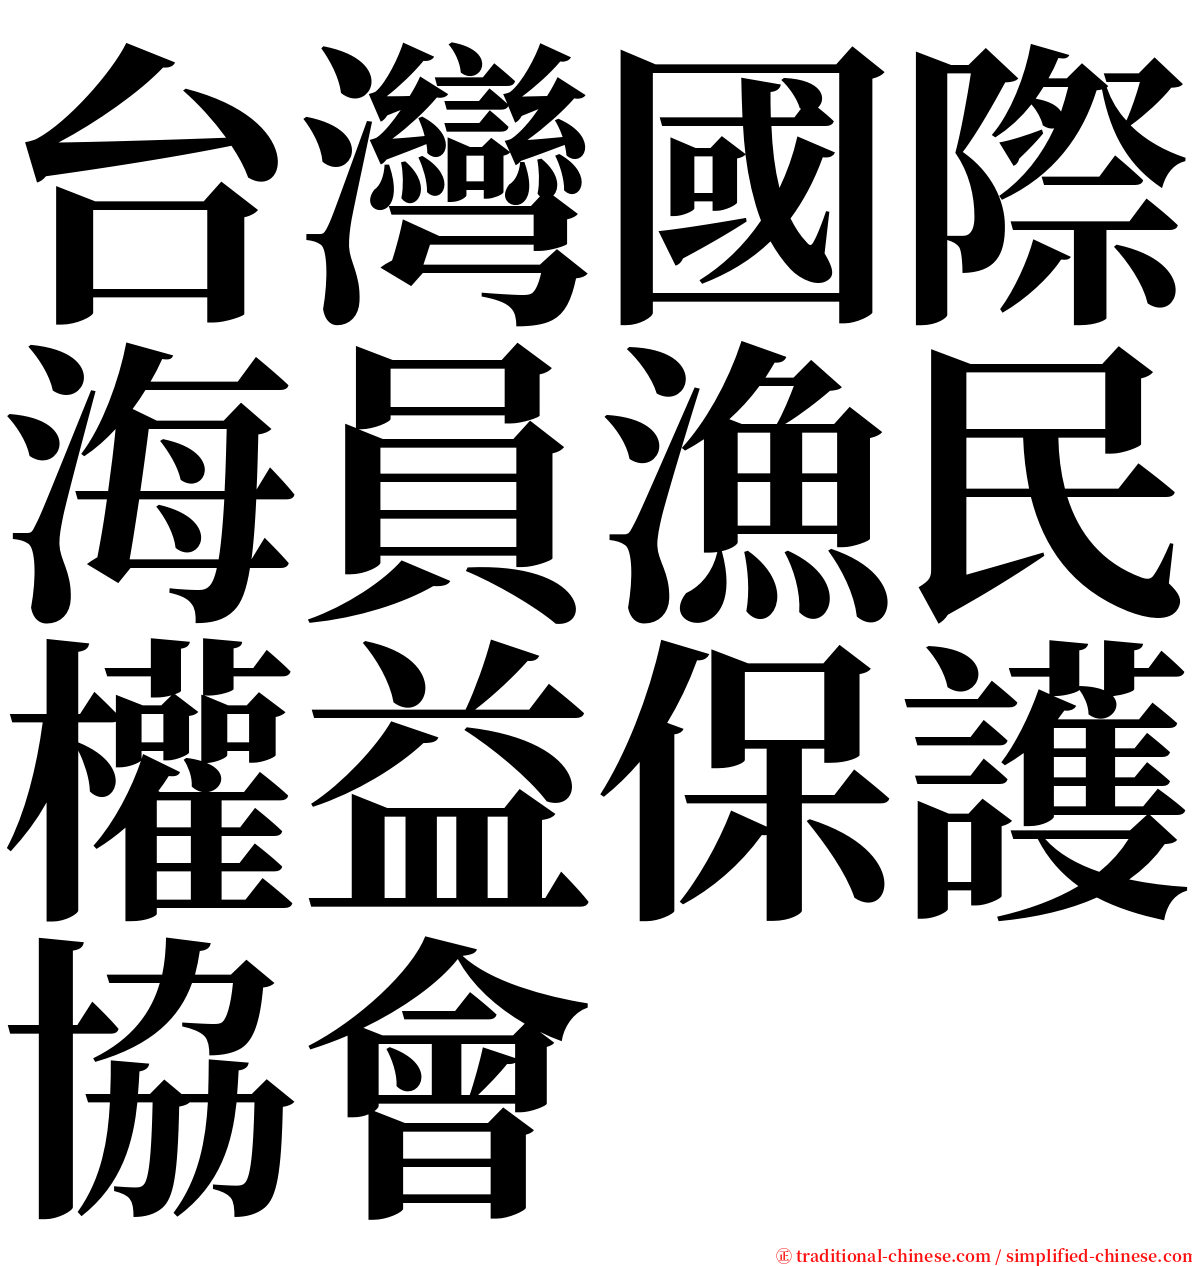 台灣國際海員漁民權益保護協會 serif font